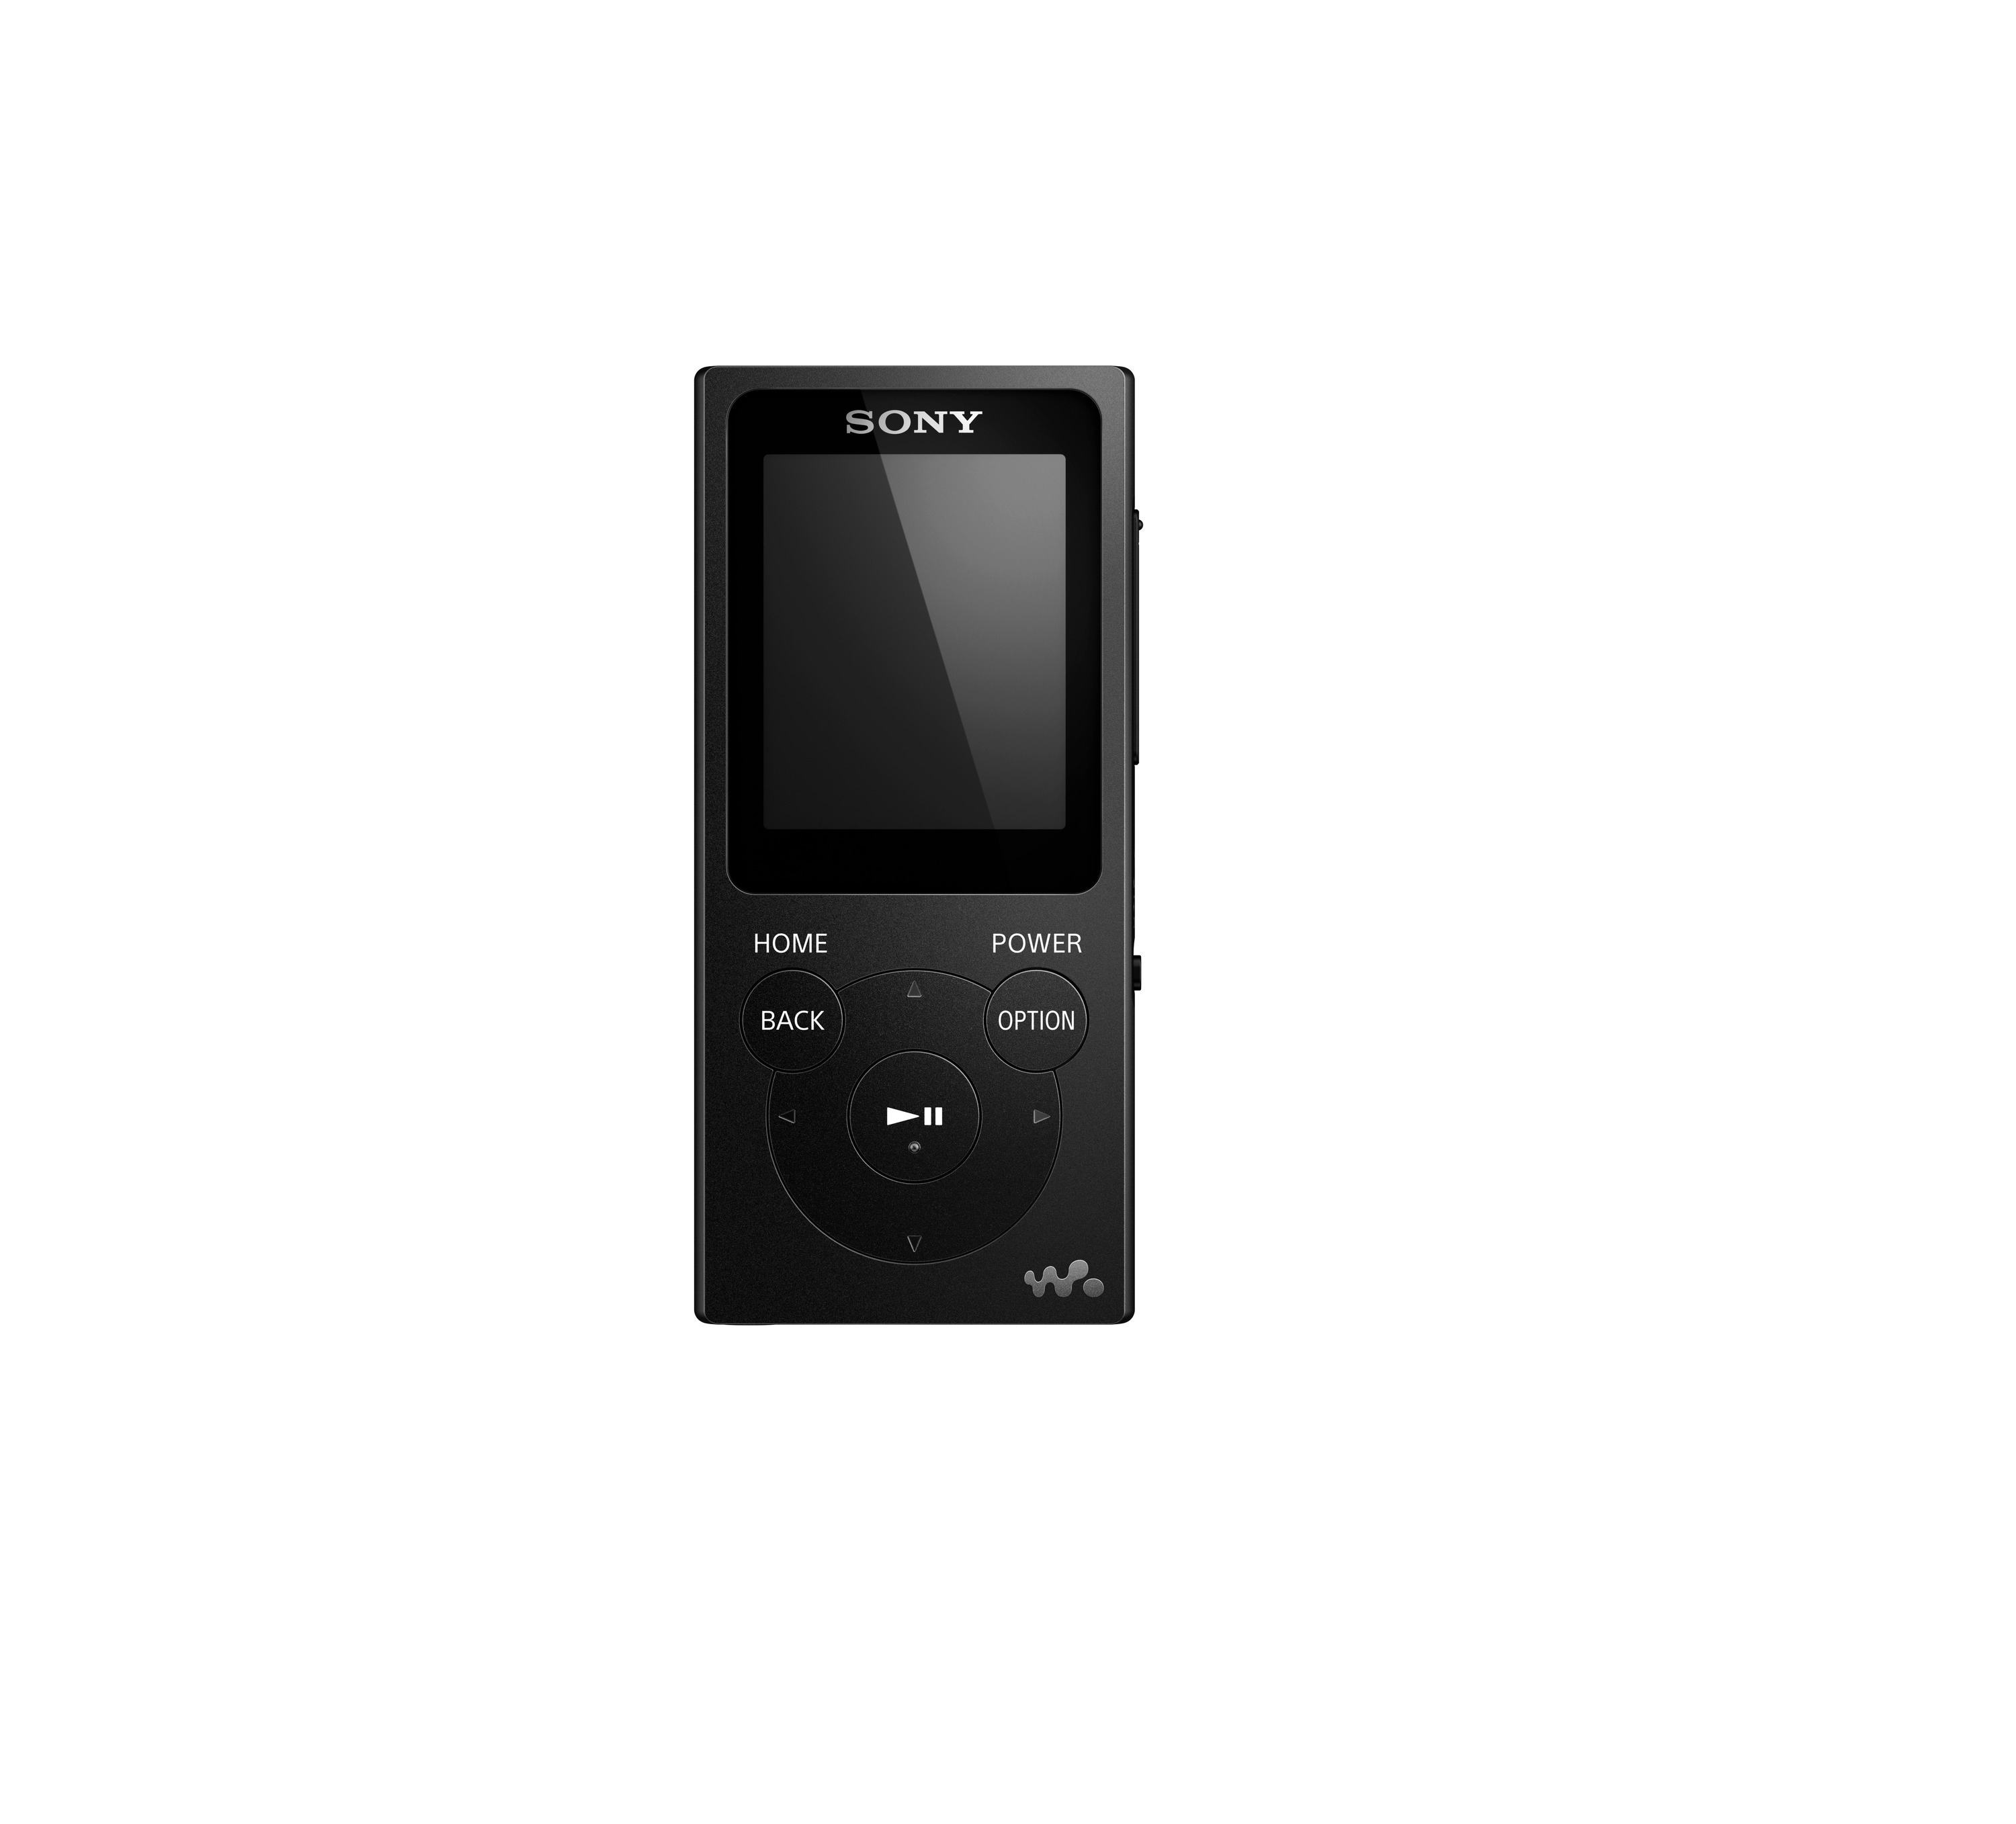 SONY Walkman NW-E394 GB, Schwarz) Mp3-Player (8